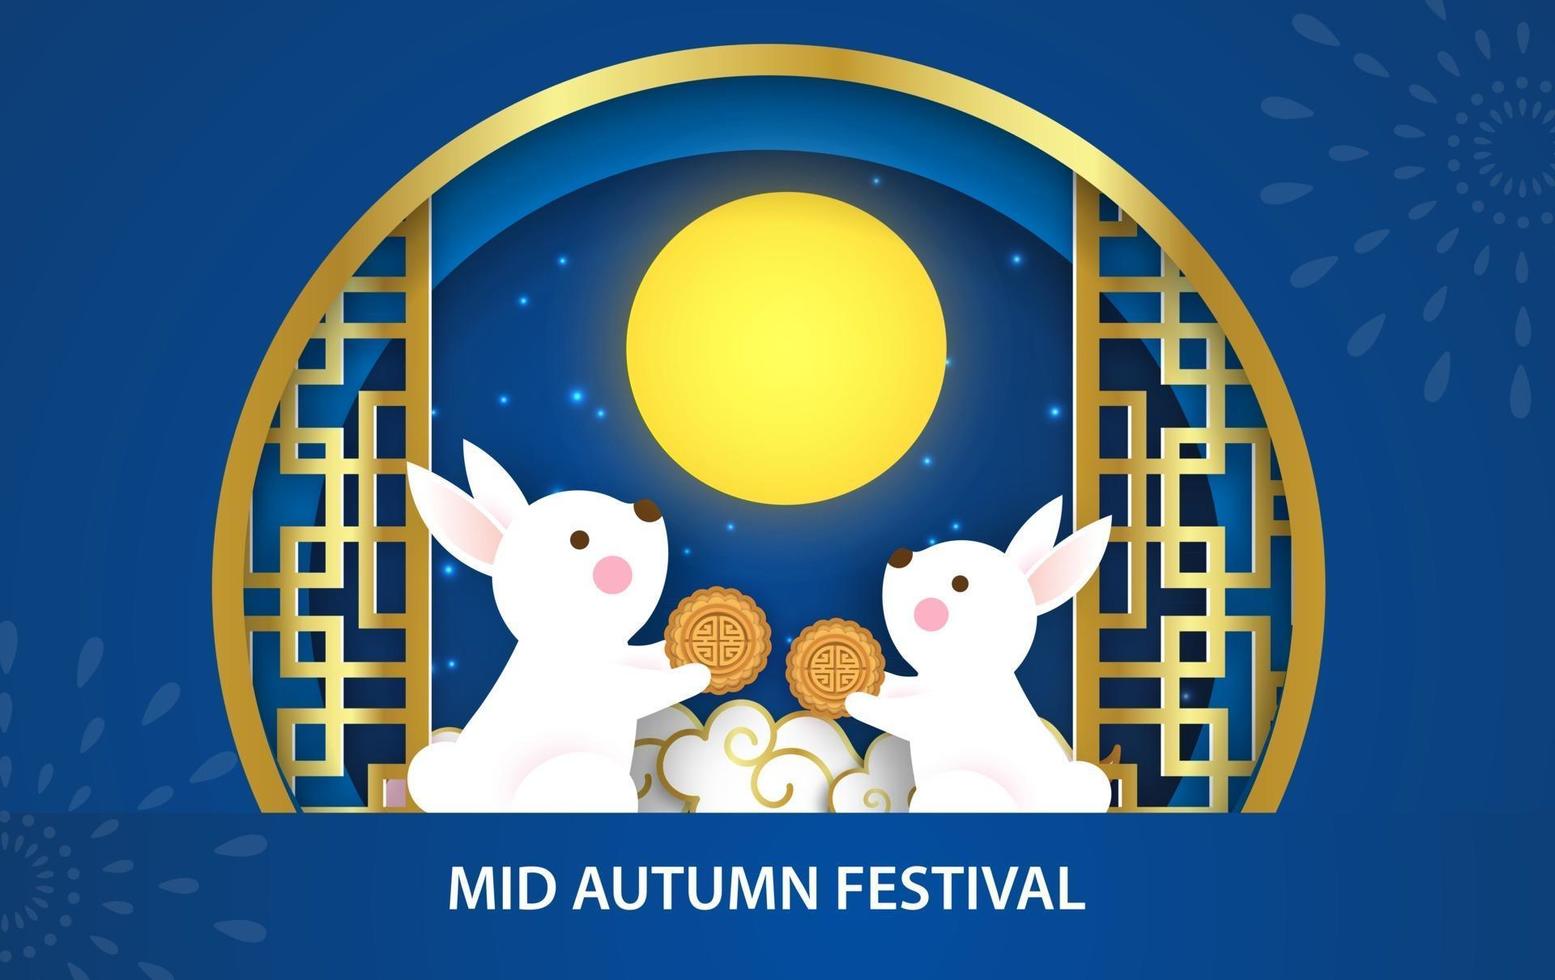 pancarta del festival del medio otoño con lindos conejos en estilo de corte de papel. vector